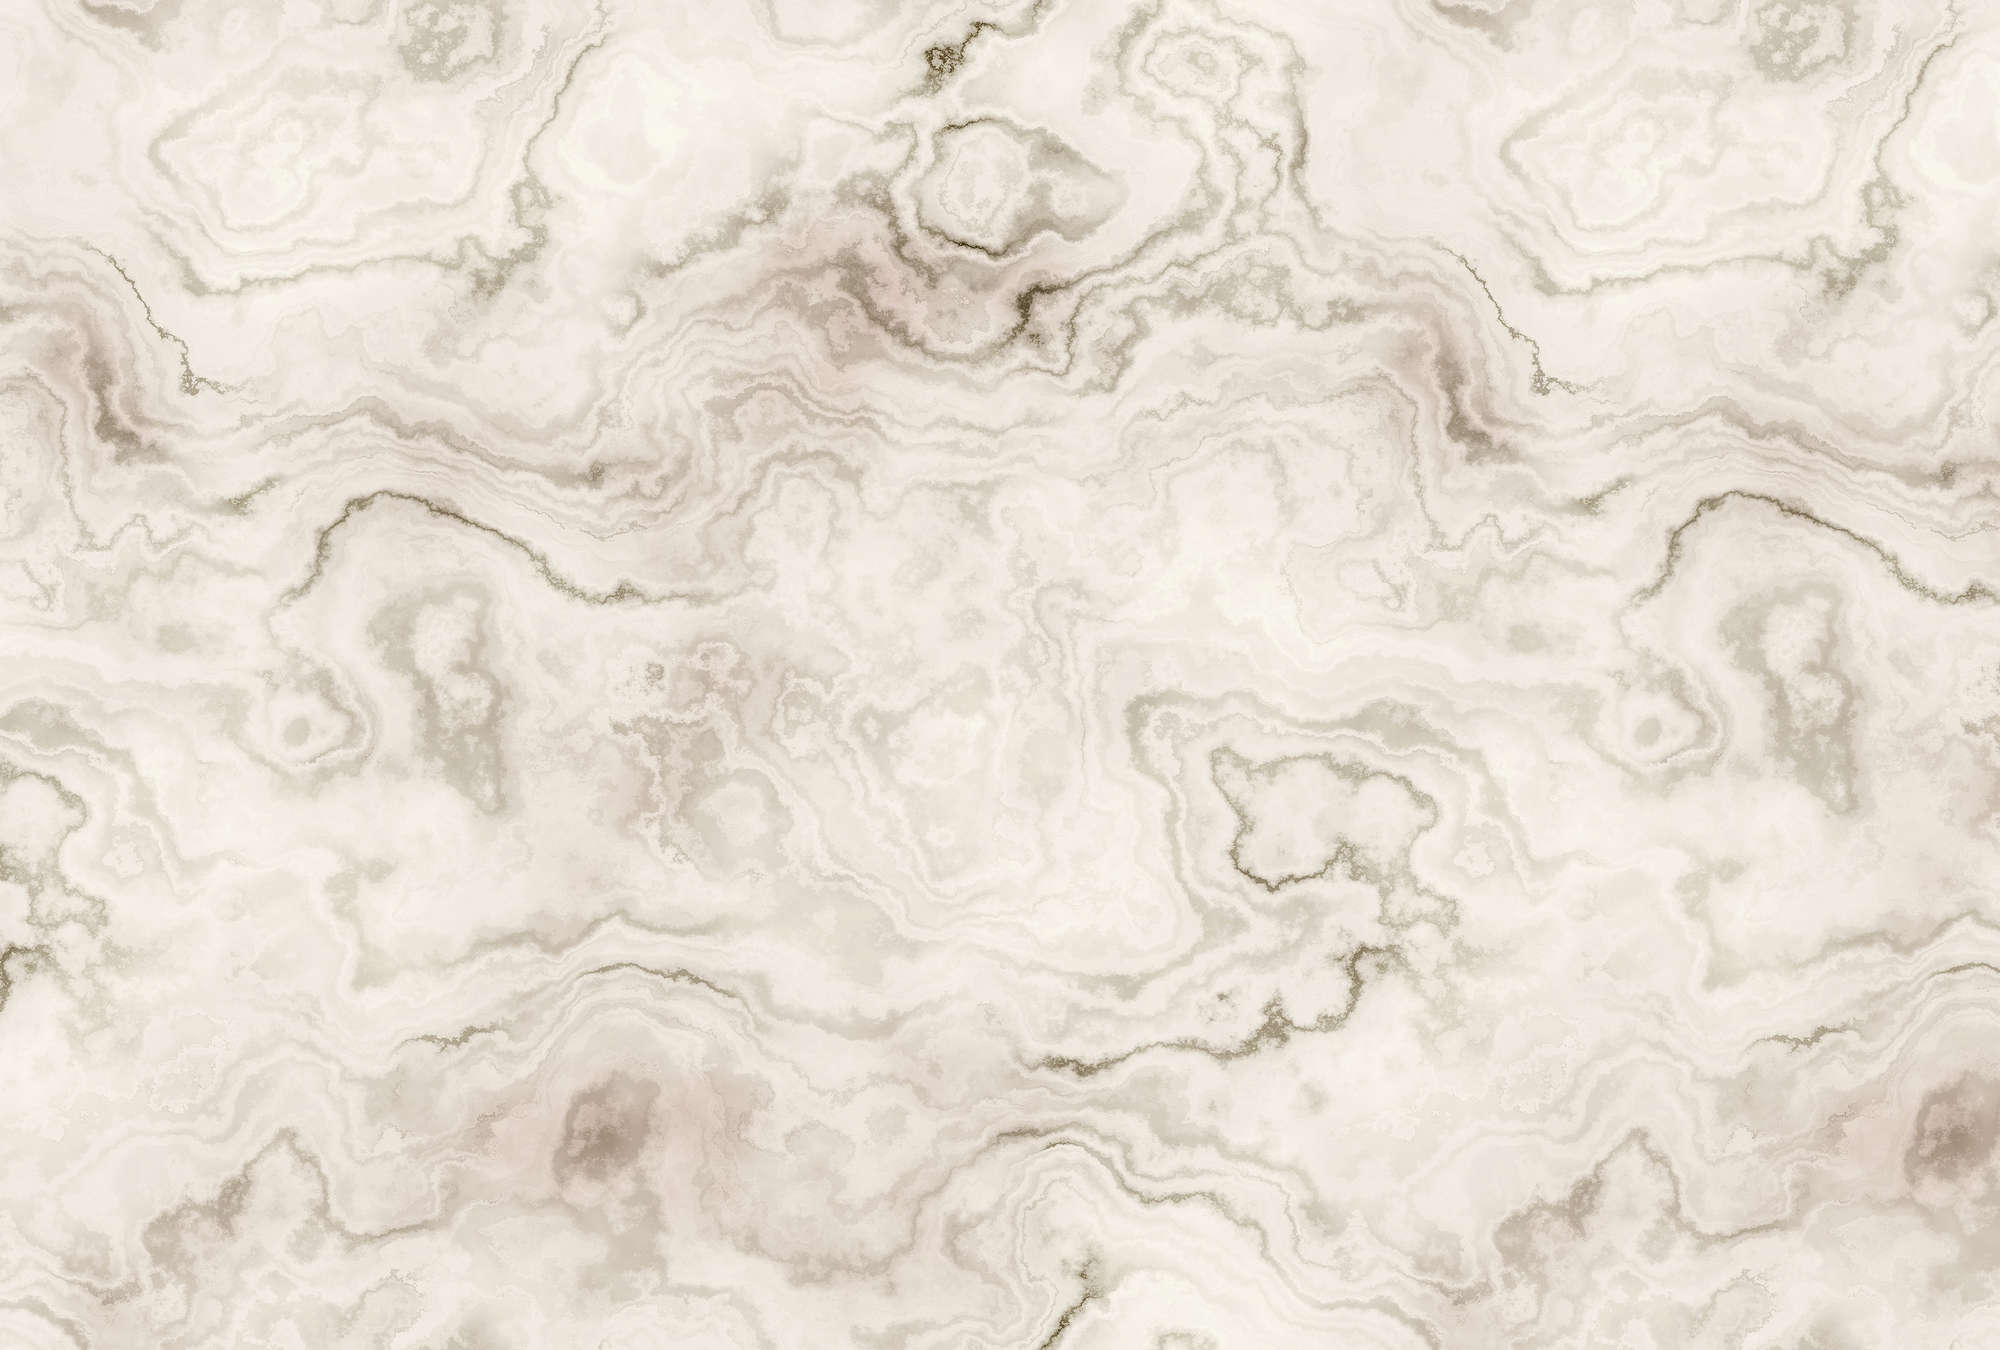             Carrara 2 - Fototapete in eleganter Marmoroptik – Beige, Braun | Mattes Glattvlies
        